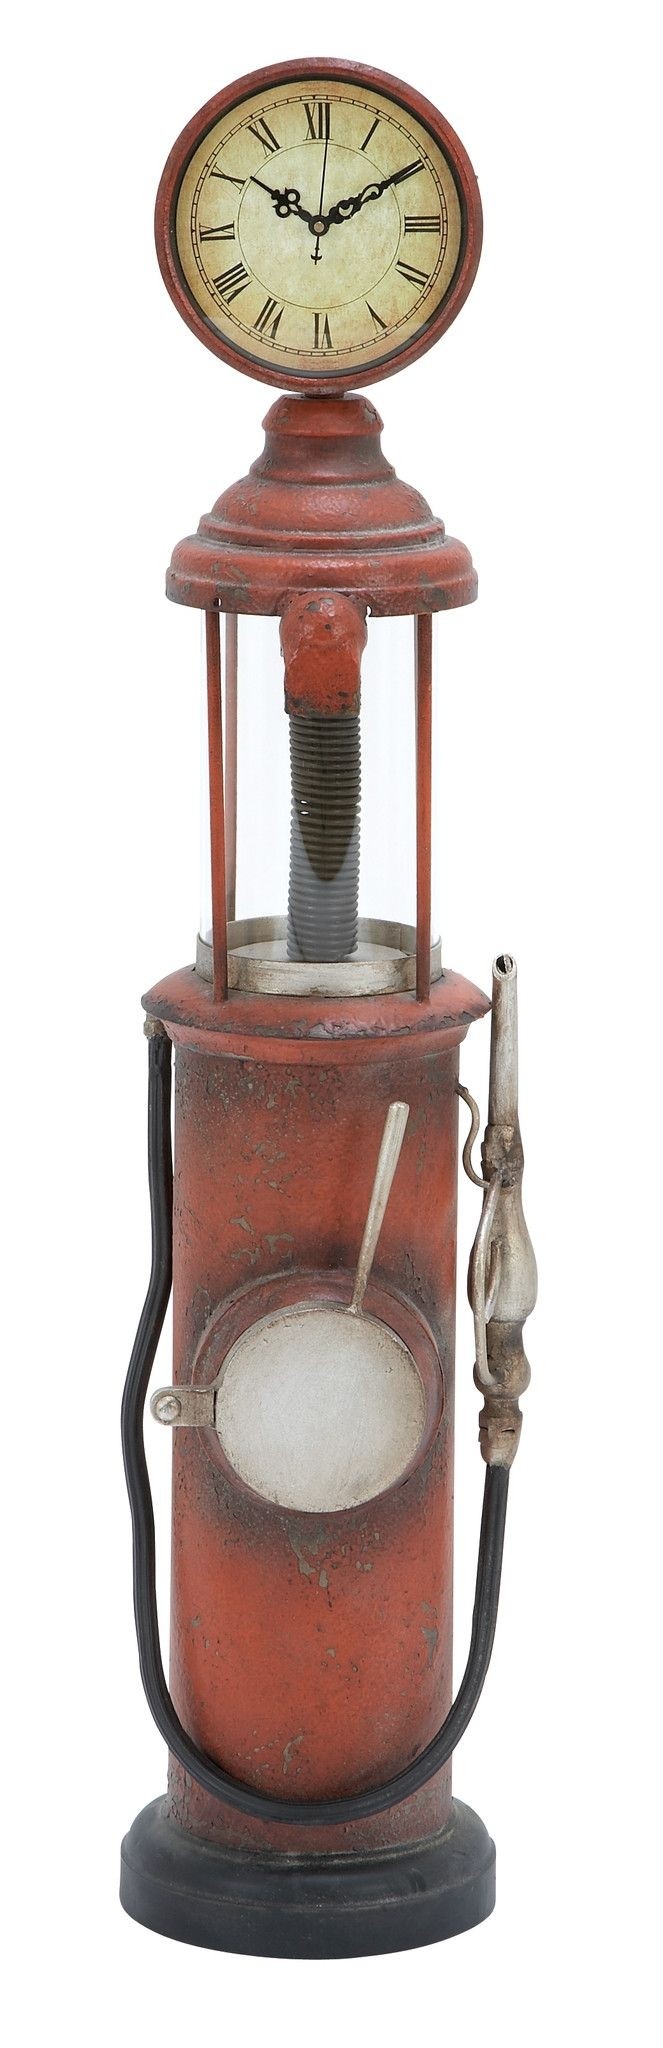 Free Standing Floor Clock As a Vintage Gas Pump